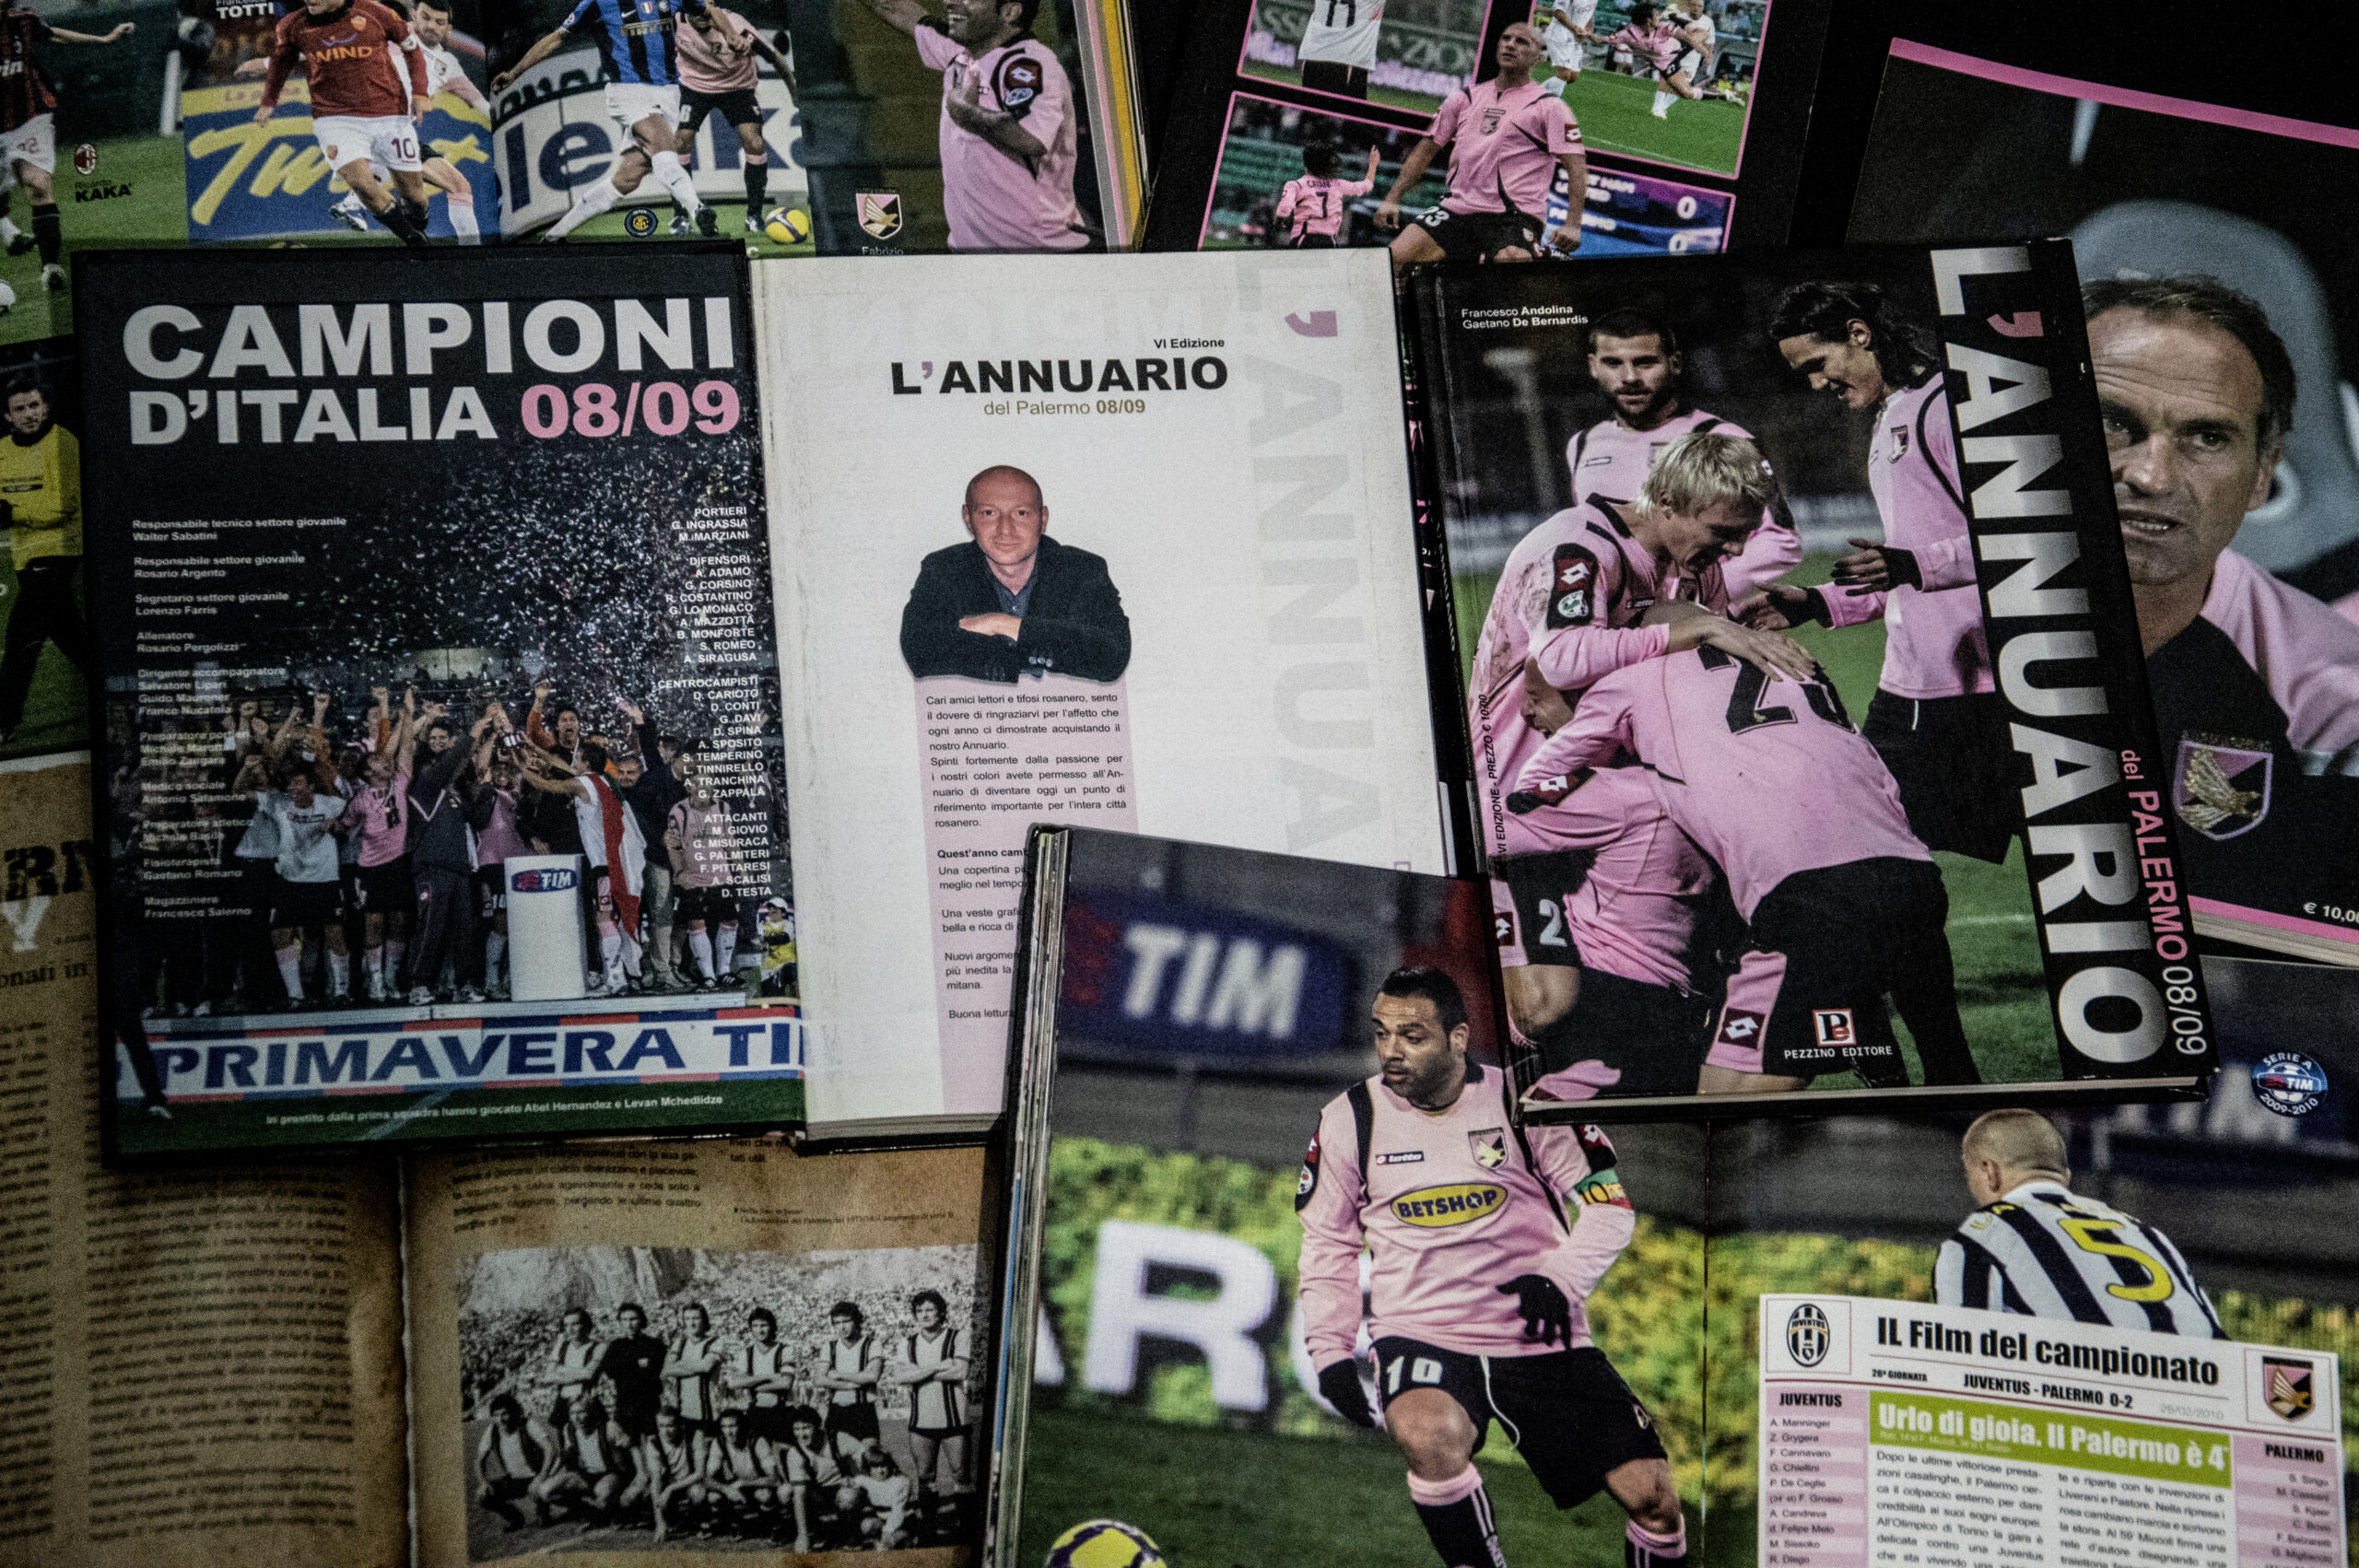 L’Annuario del Palermo Calcio. Come ti ho creato il primo Almanacco sportivo rosanero